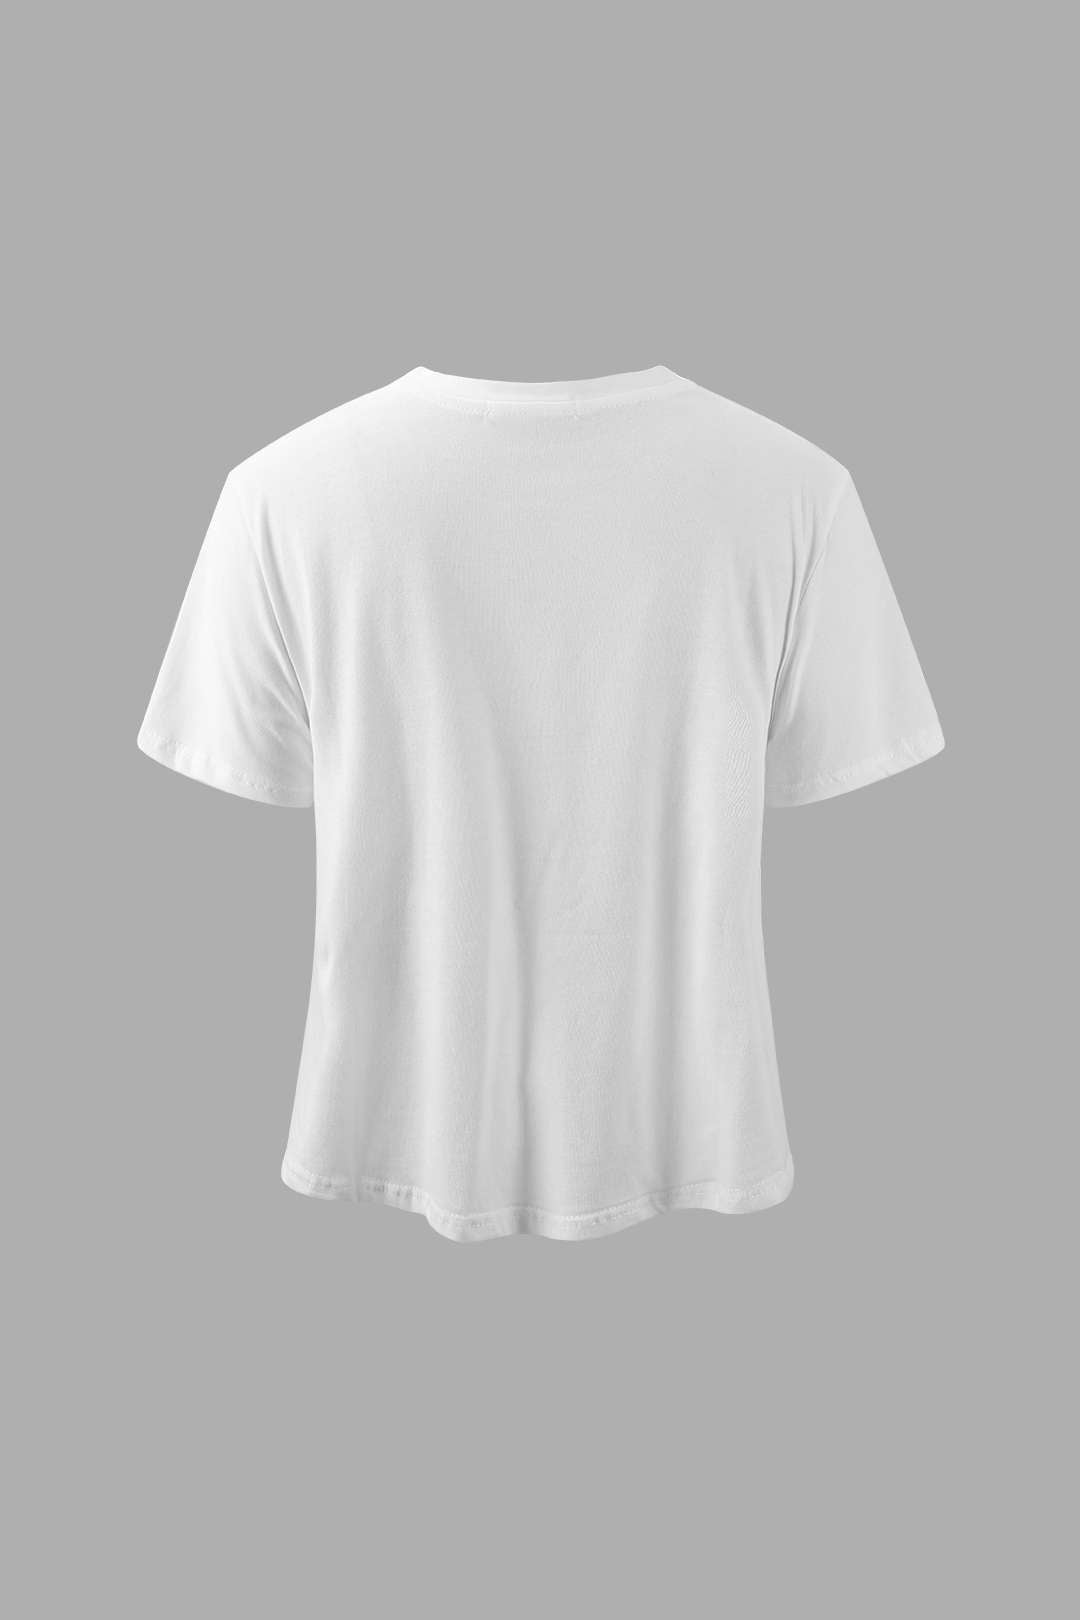 Brigitte Pop Art Short Sleeve T-Shirt